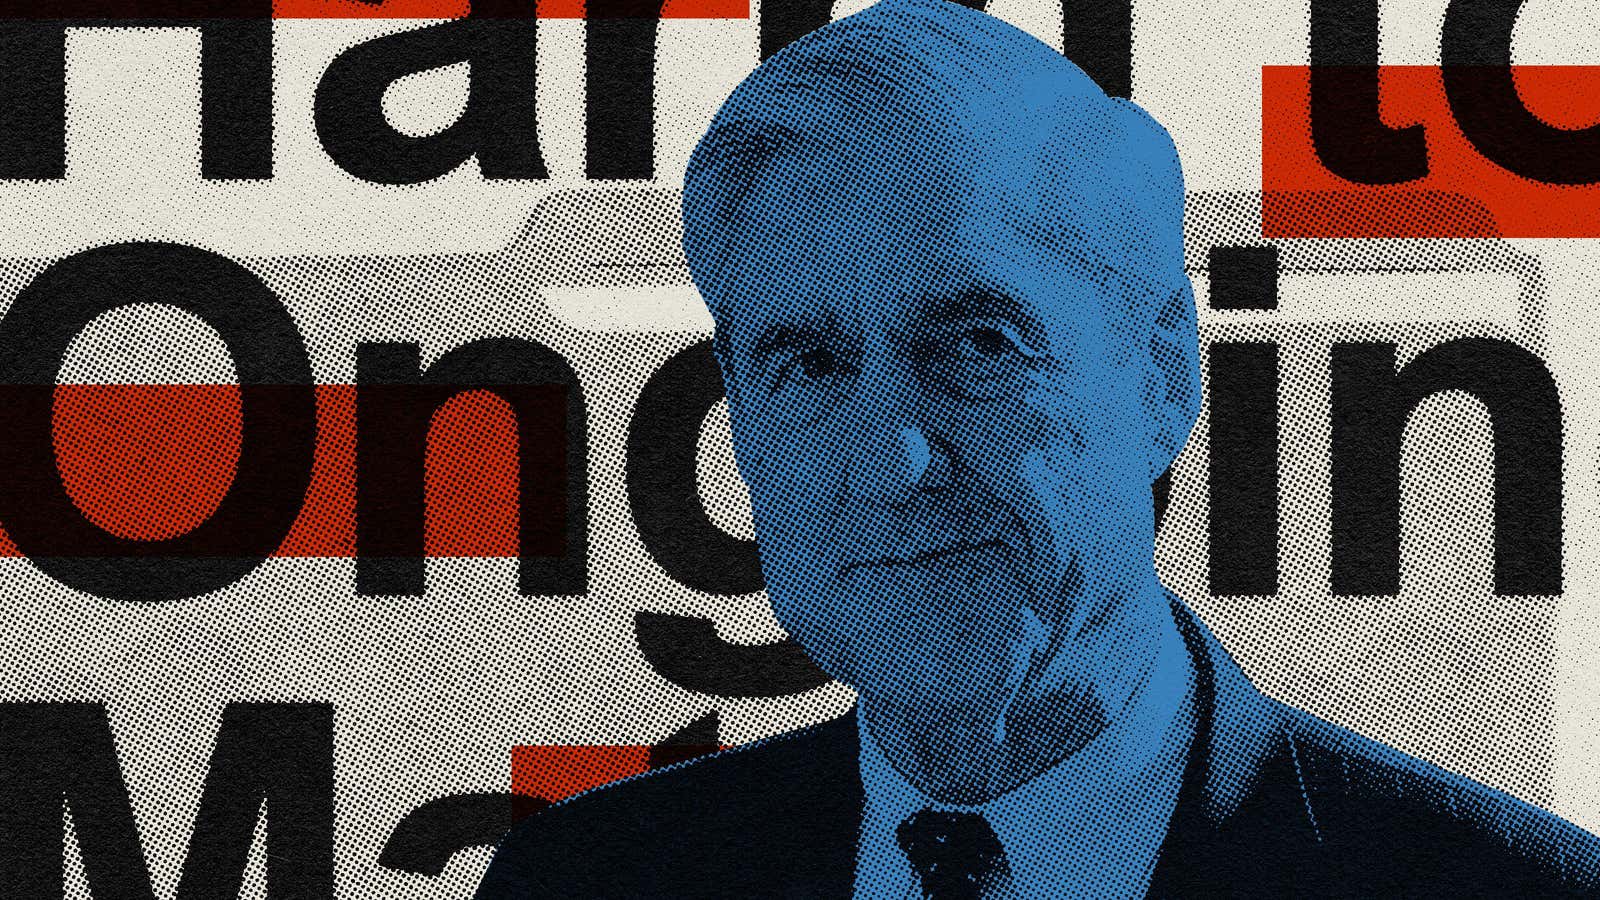 Five key takeaways from the Mueller report